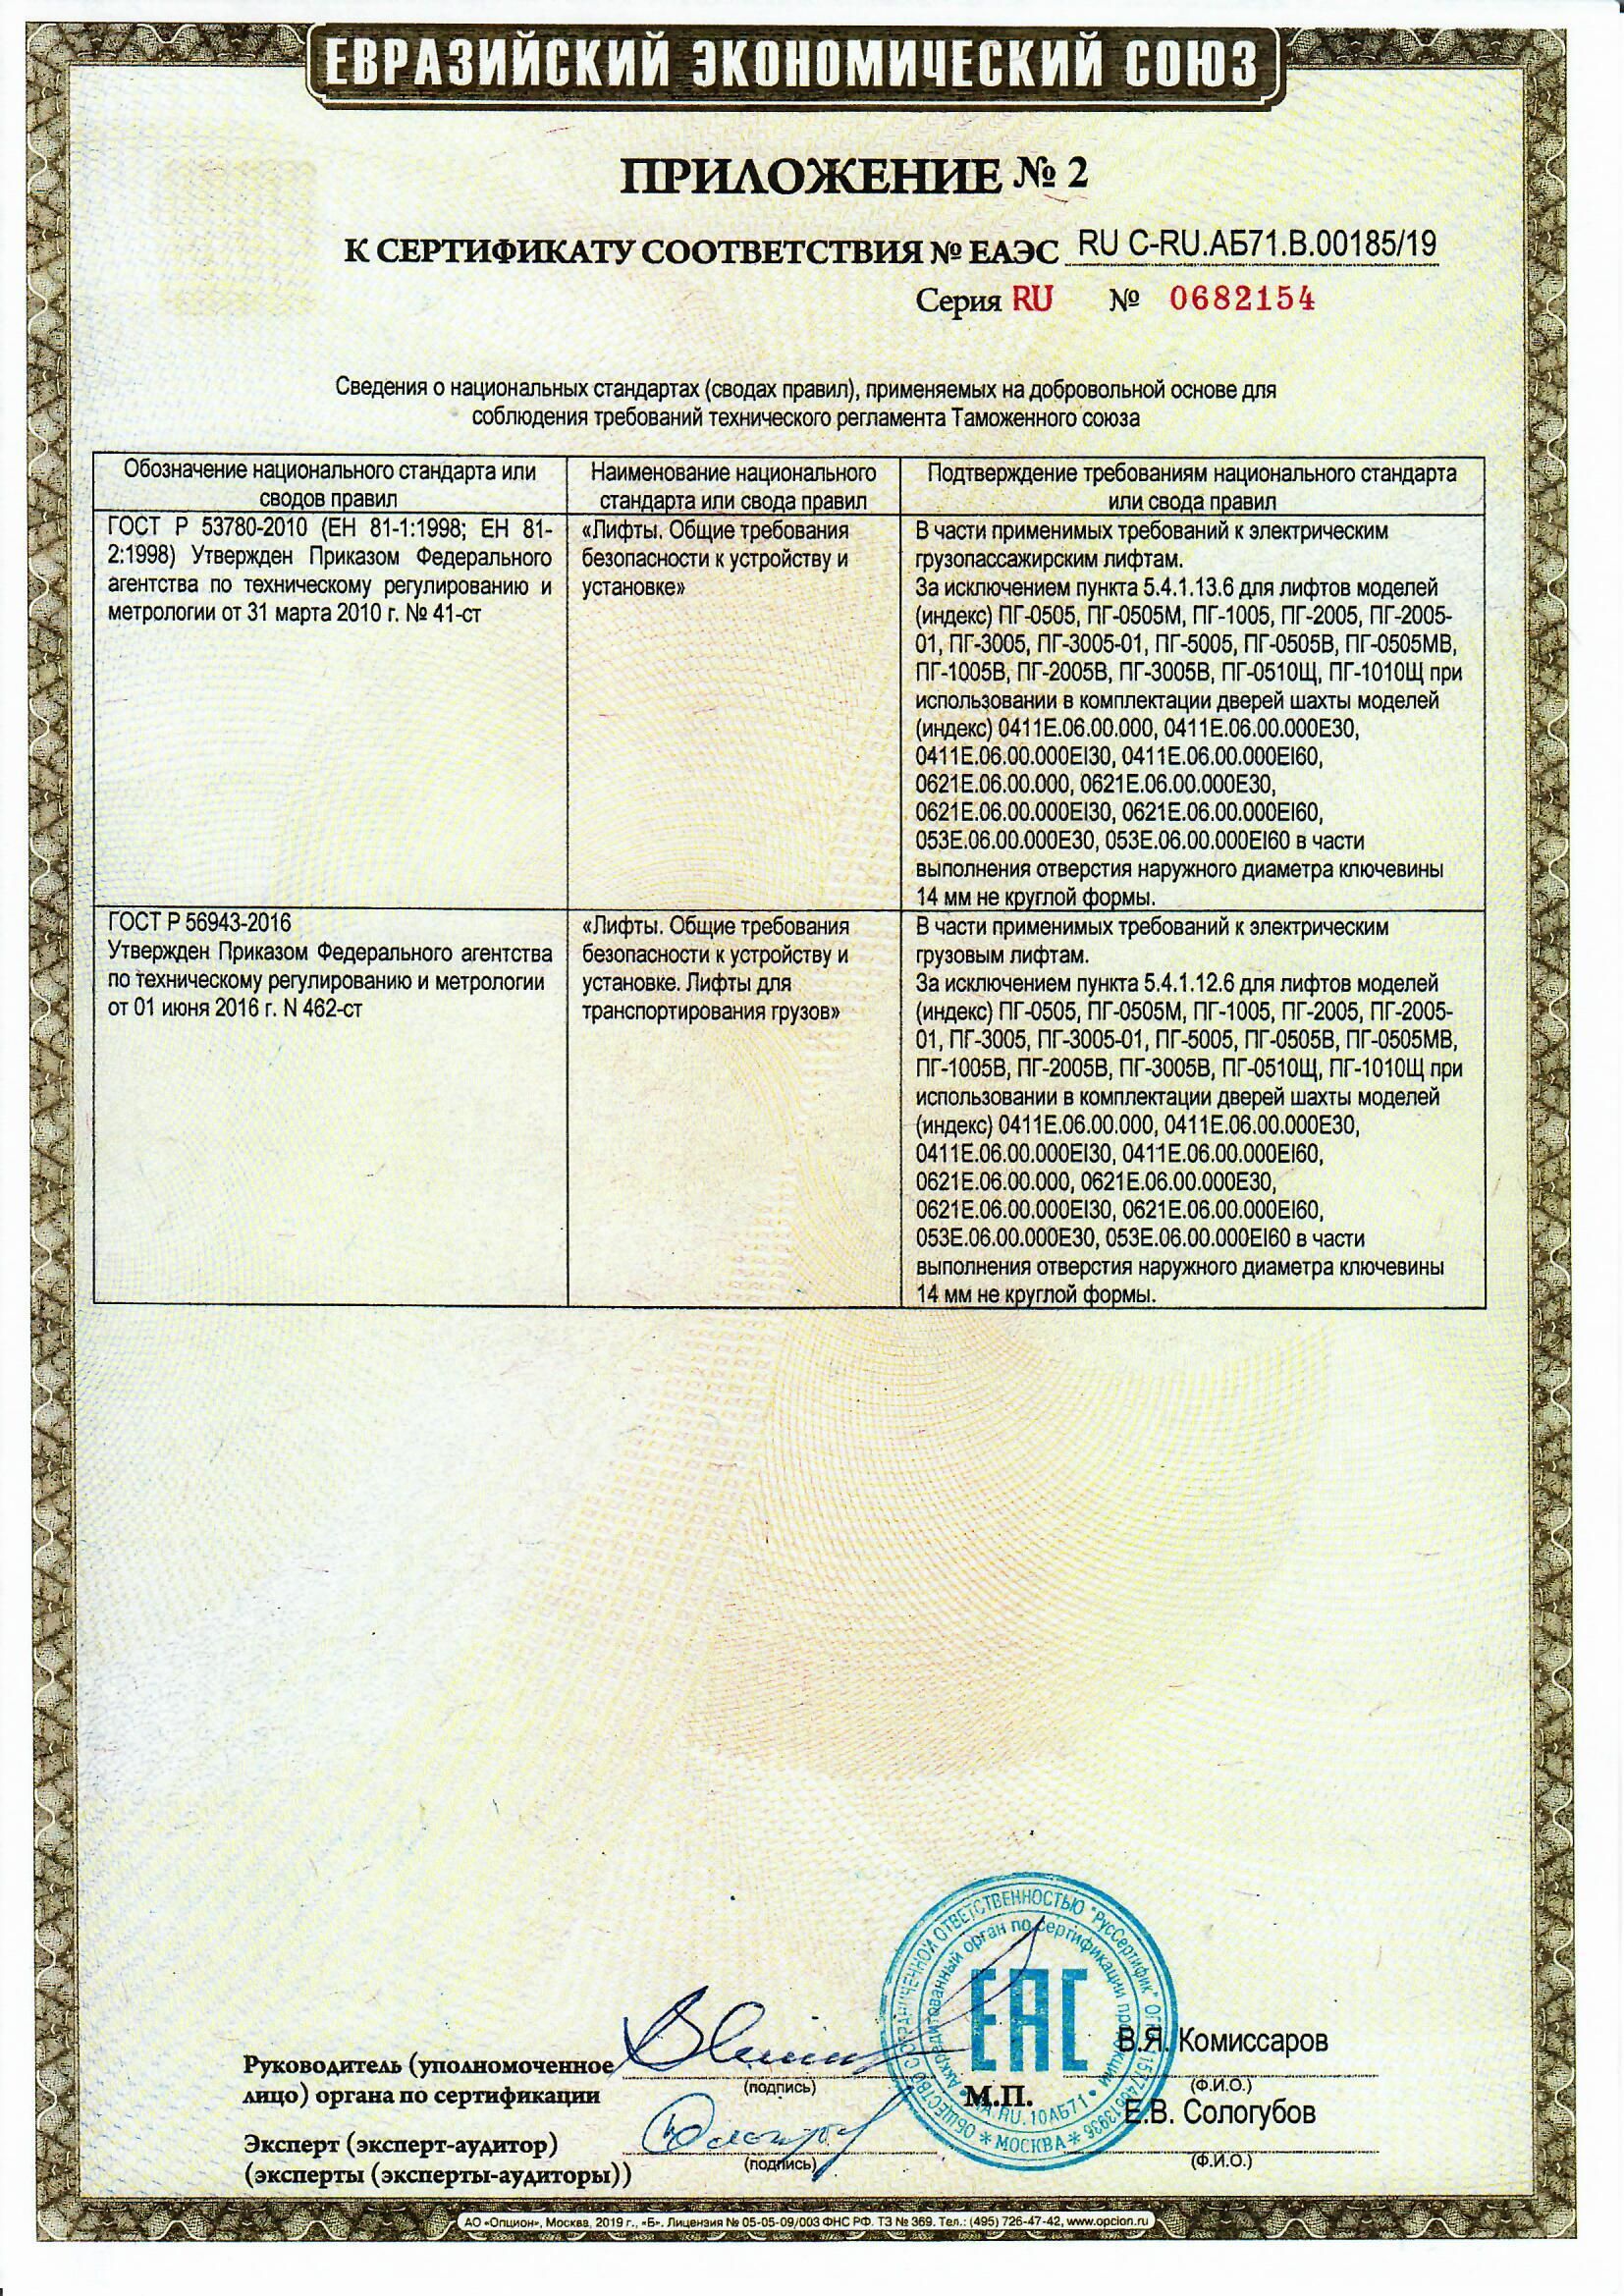 Приложение 2 к Сертификату RU С-RU.АБ71.В.00185/19